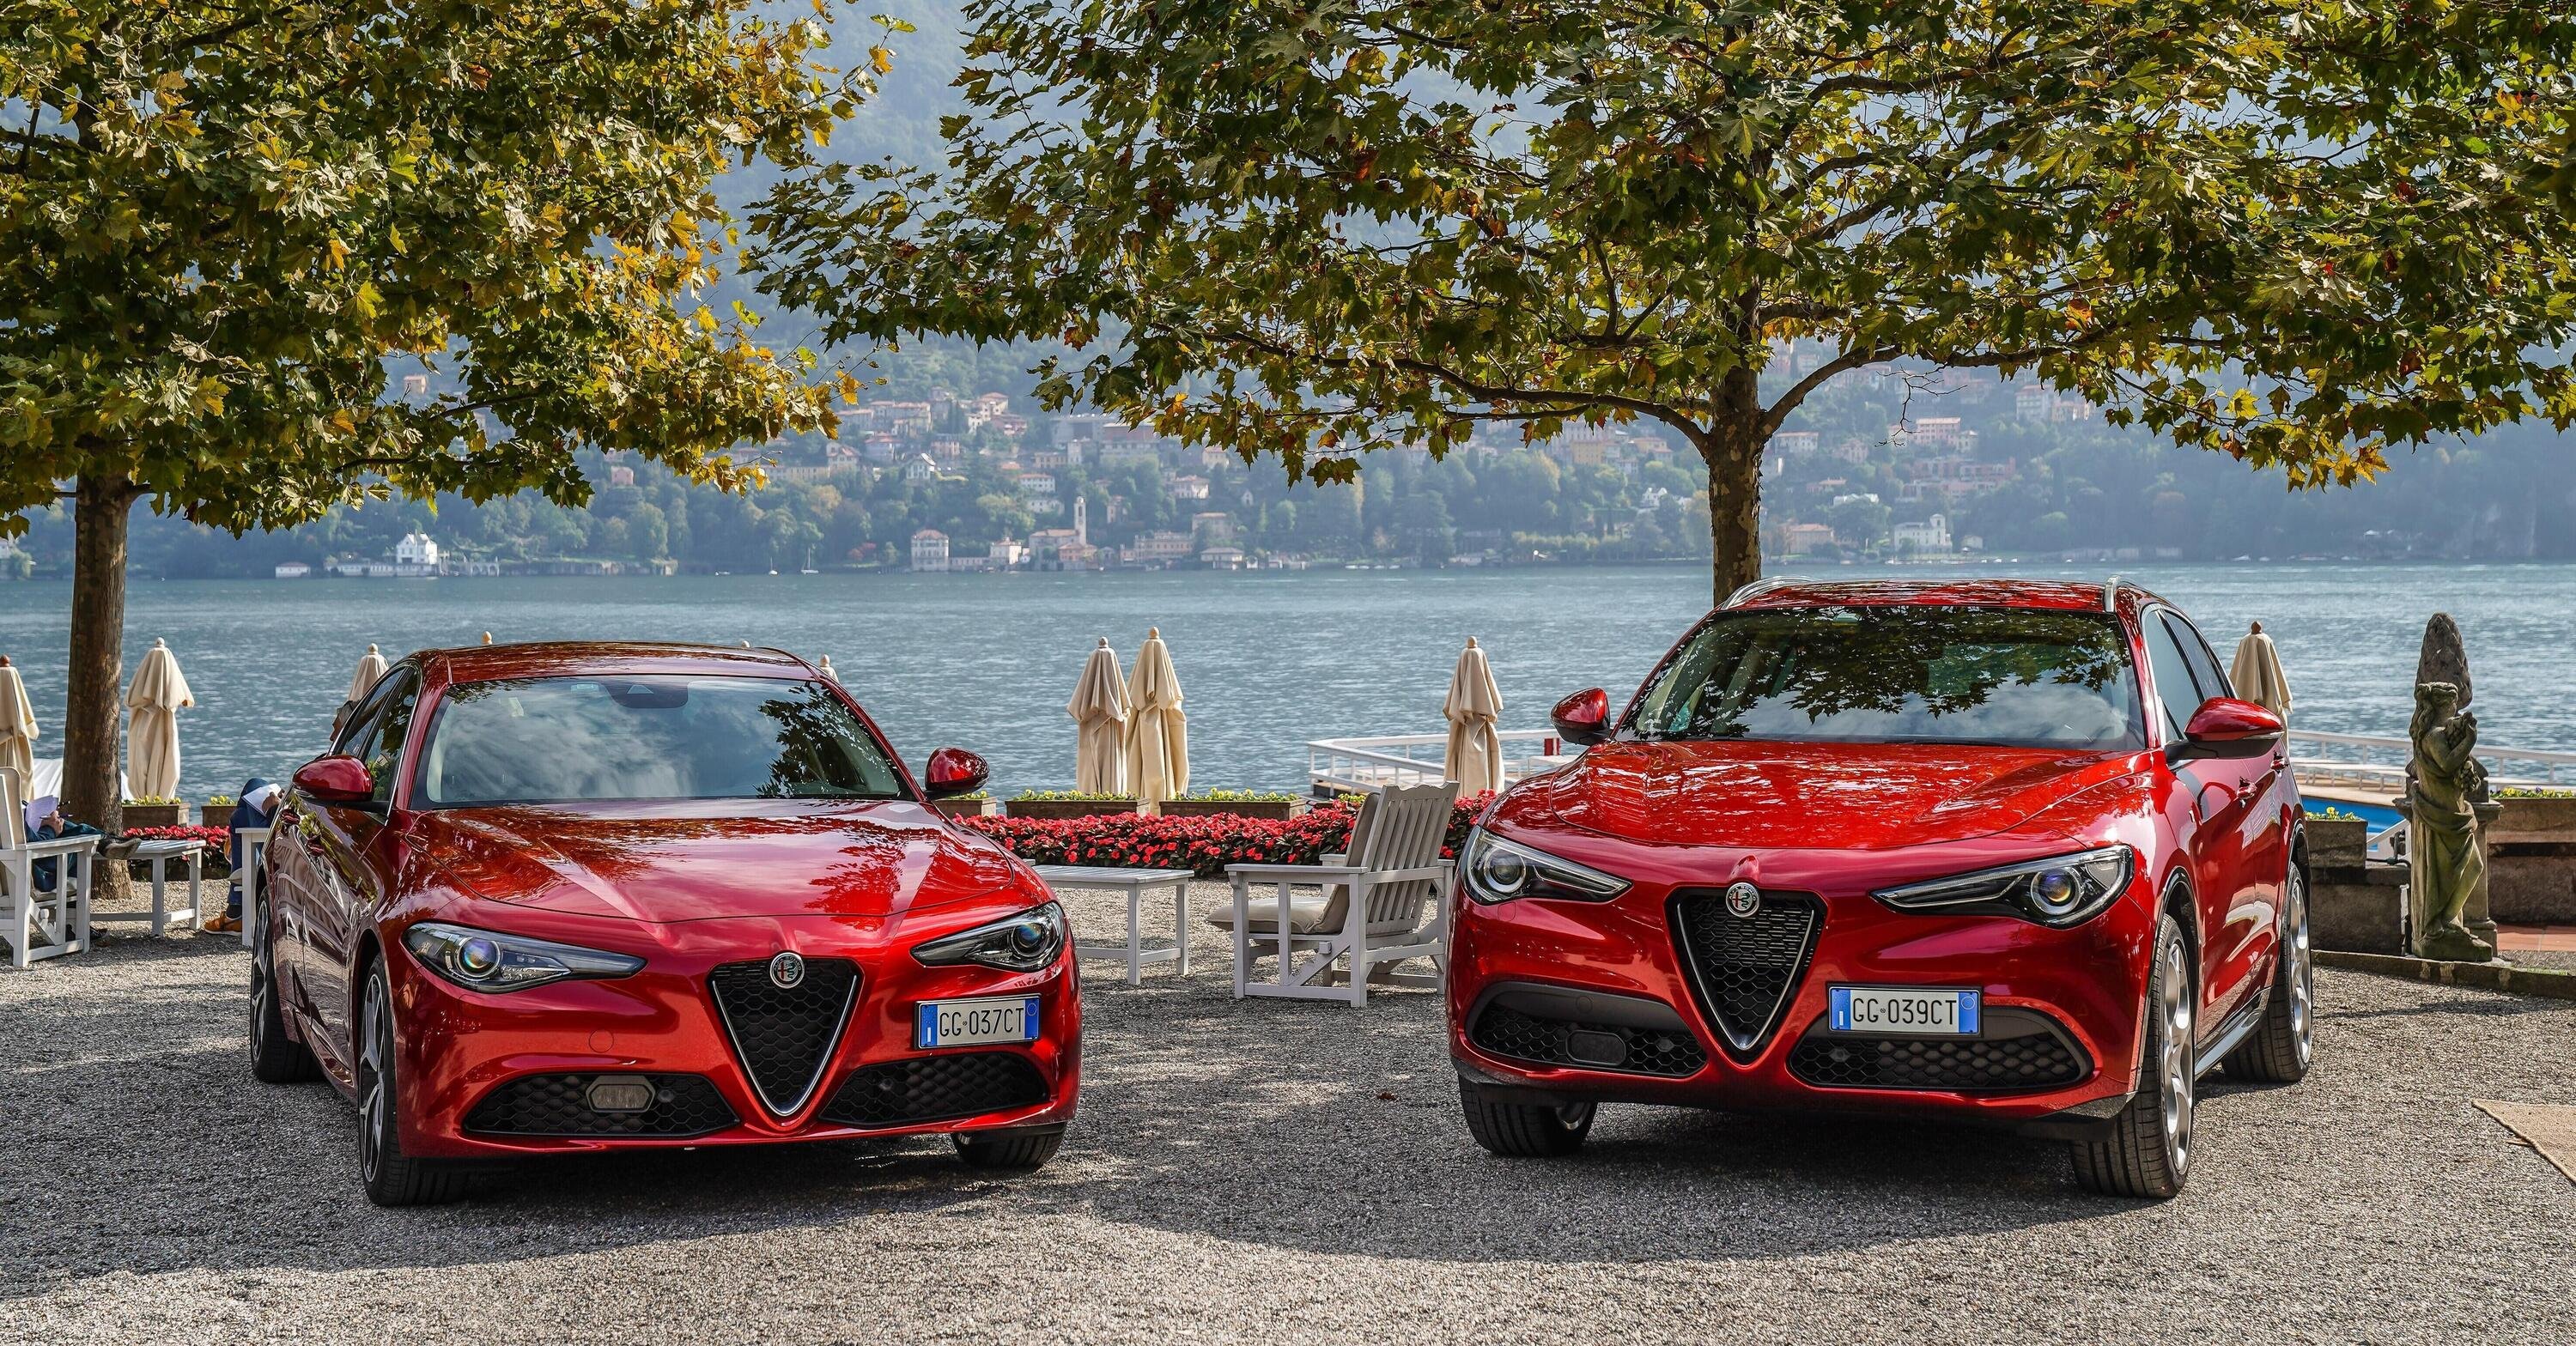 Alfa Romeo celebra &ldquo;un anno straordinario&rdquo; preparandosi al 2022, ma i numeri non sono tutti positivi